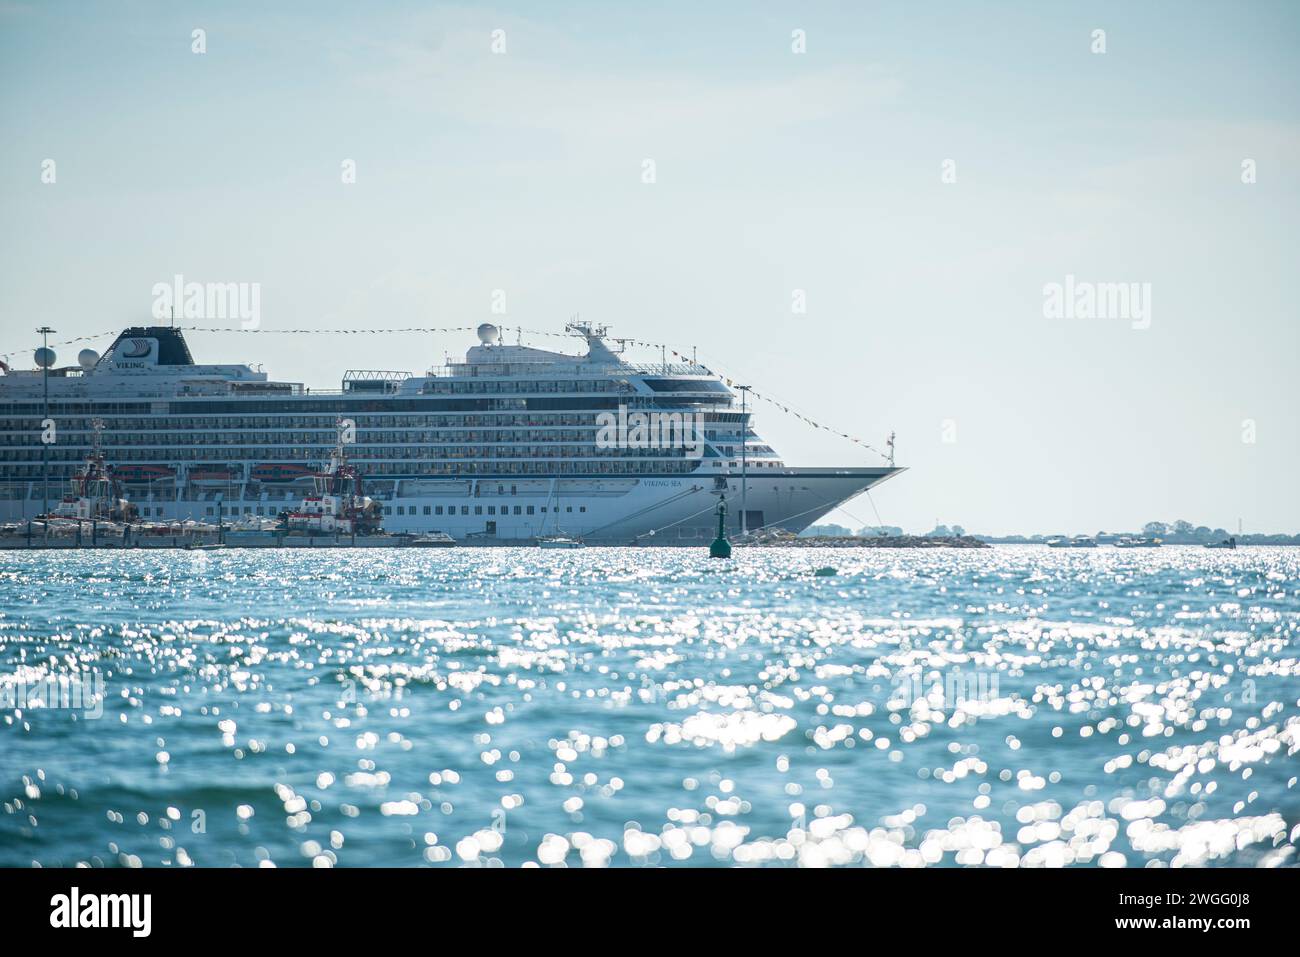 Le navire de croisière Viking a accosté au port de Chioggia, dans la lagune vénitienne, en Italie Banque D'Images